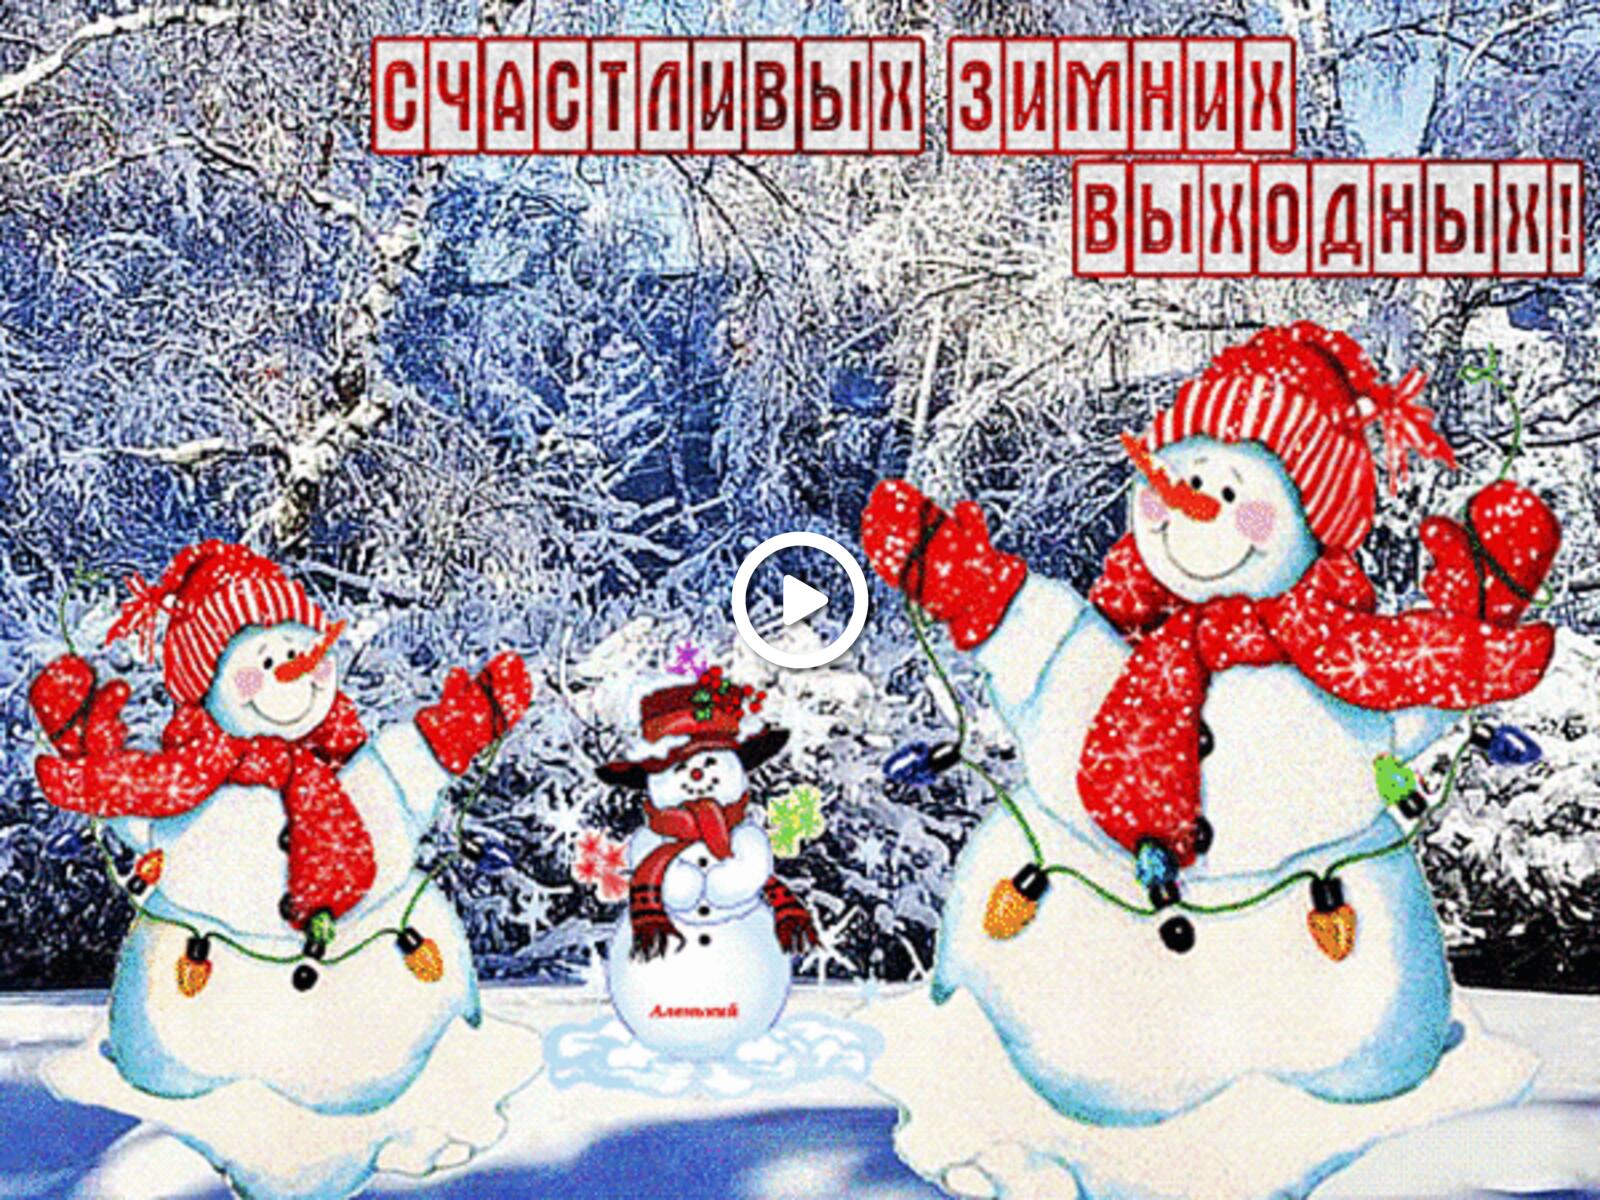 一张以雪人 冬季 雪为主题的明信片